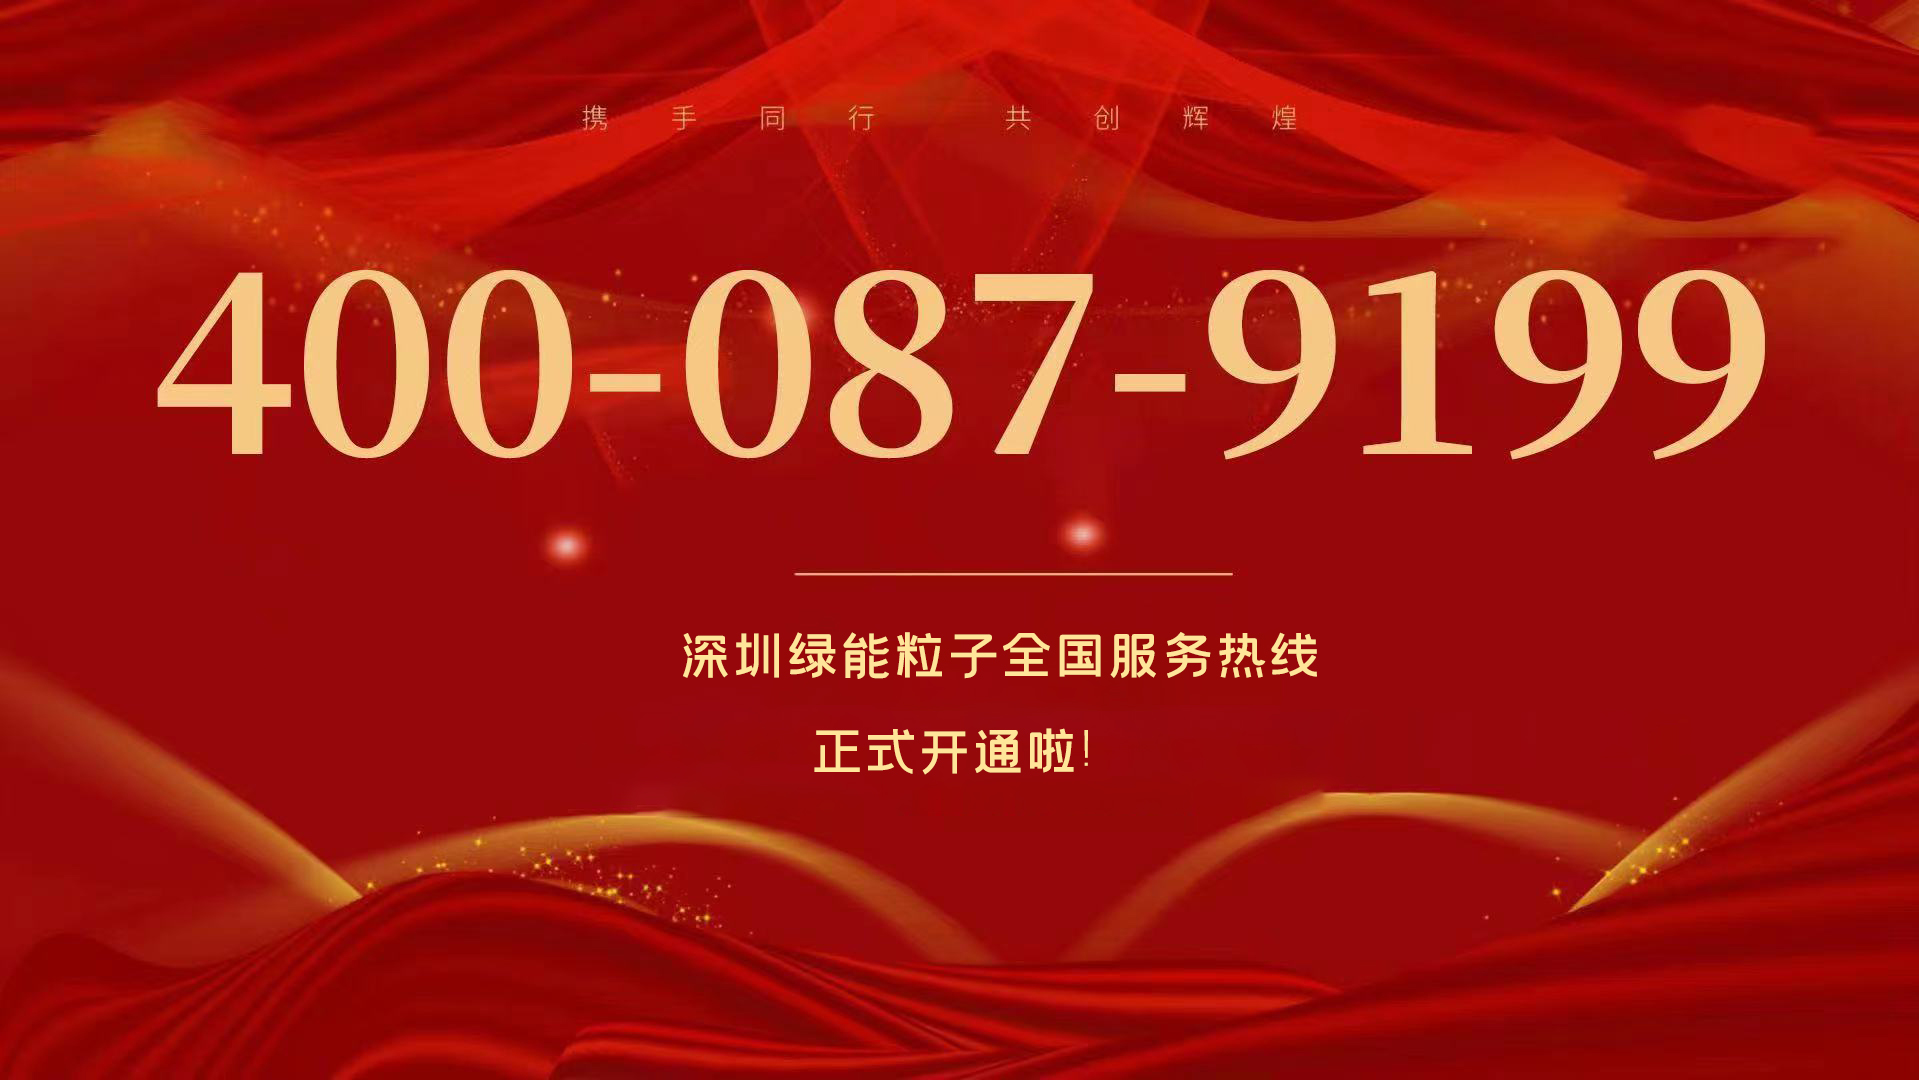  深圳新利体育luck18全国效劳热线400-087-9199正式开通啦！  